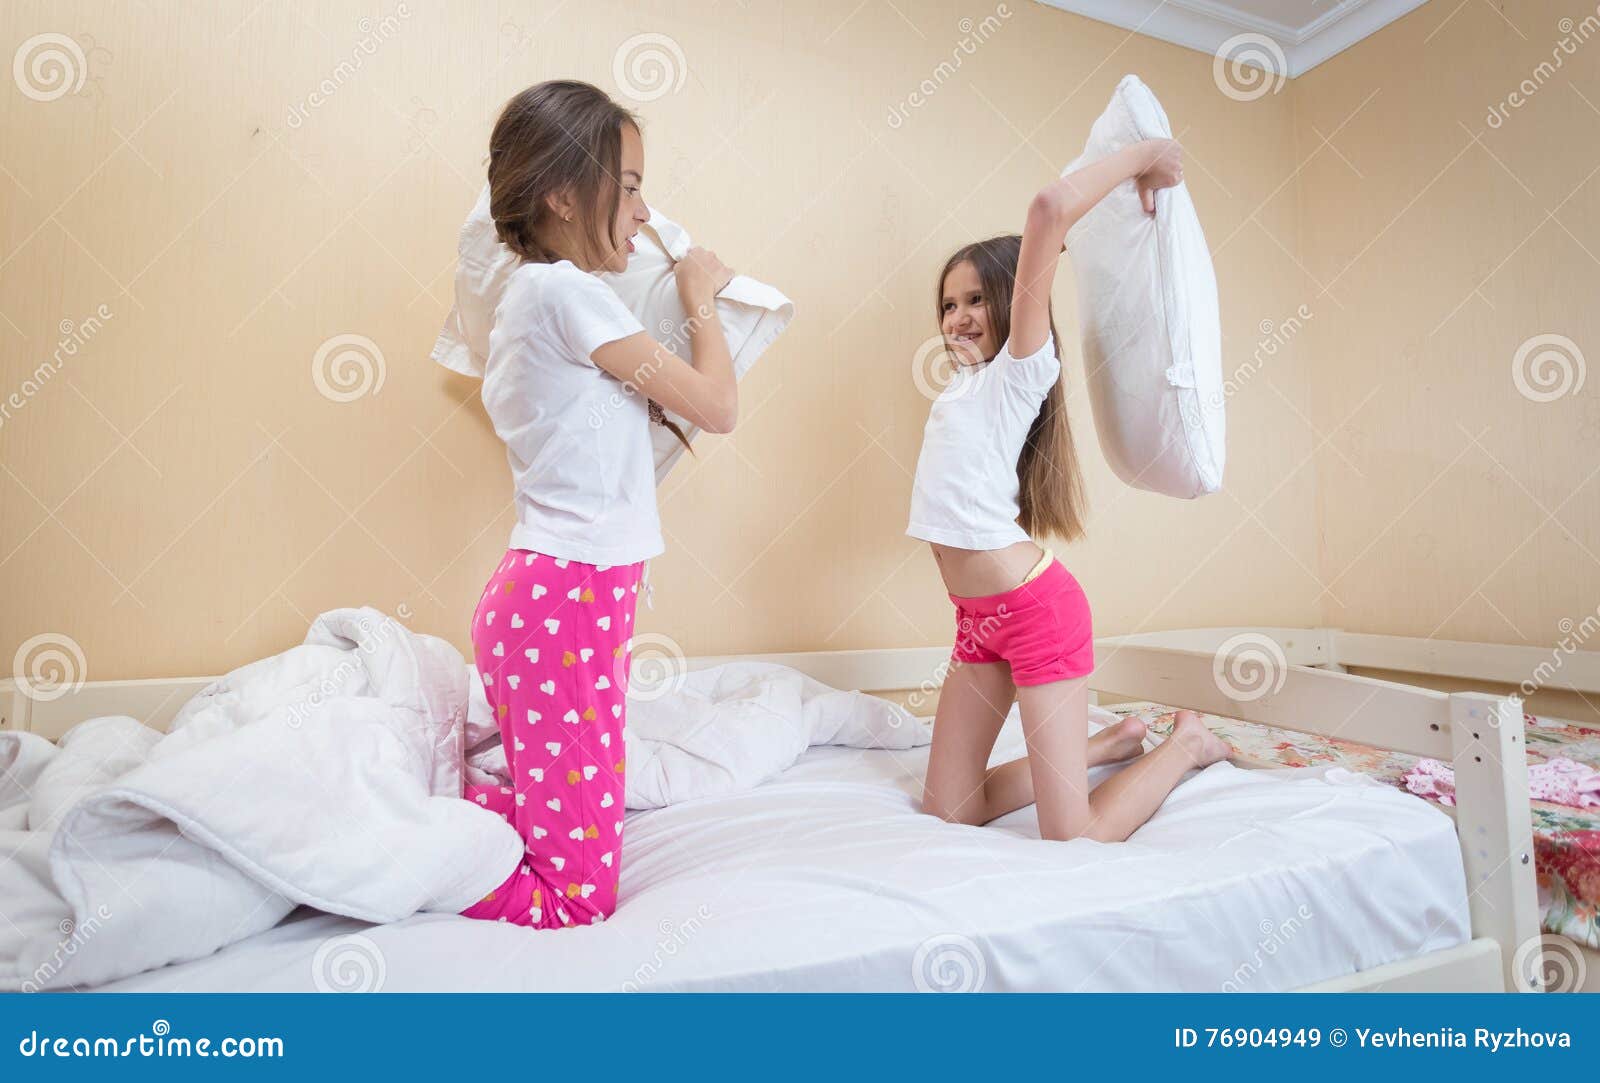 Сестры в пижамах кровать. Пижама для подростка девочки. Сестра в пижаме. Кровать для девочки 12 лет. Пришел в спальню к сестре